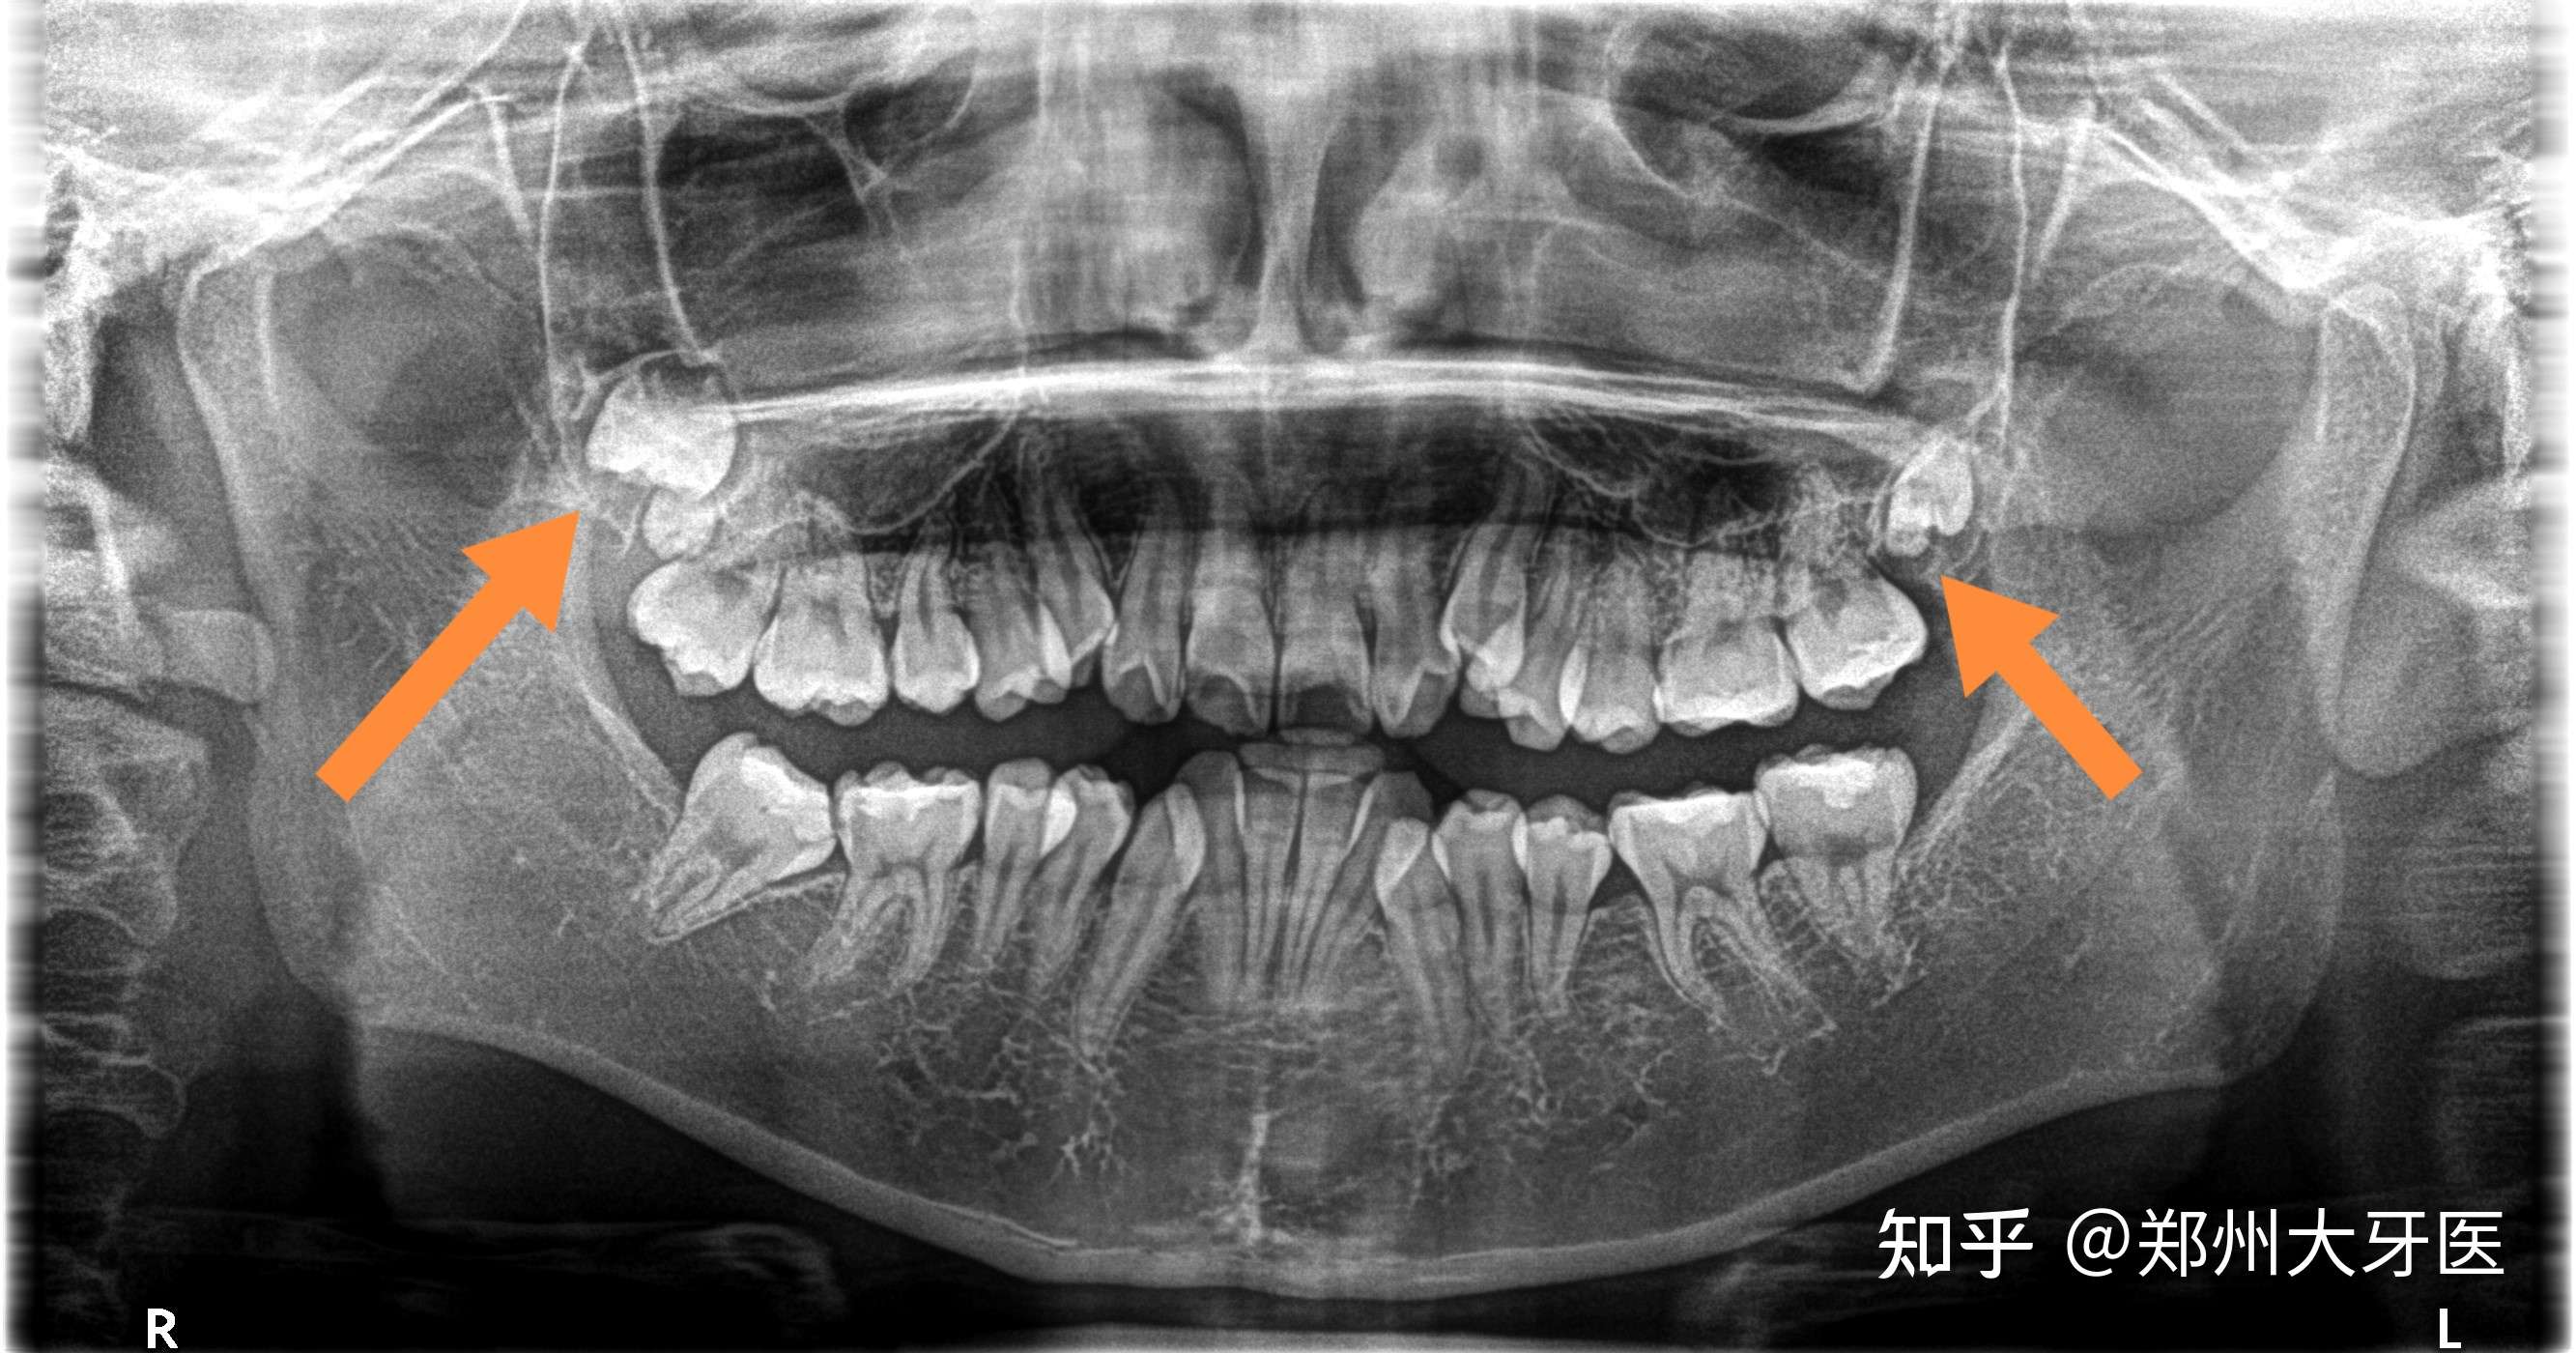 郑州大牙医 的想法: 高位智齿,紧贴上颌窦,风险比较高,操作… 